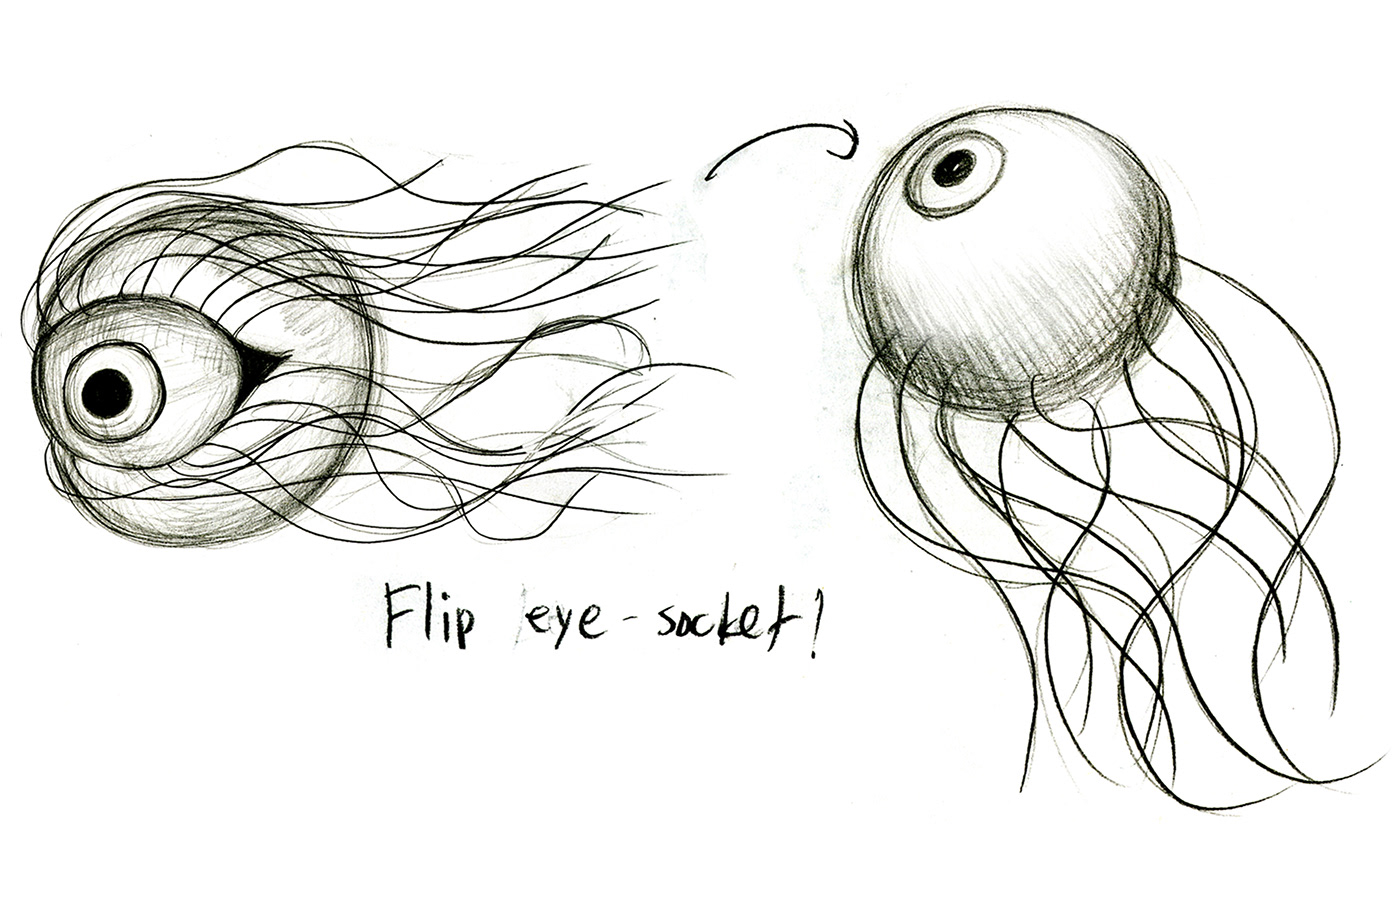 #progress #Design #concept #characterdesign #eyeball #monster #Creature #sketch #render #comet